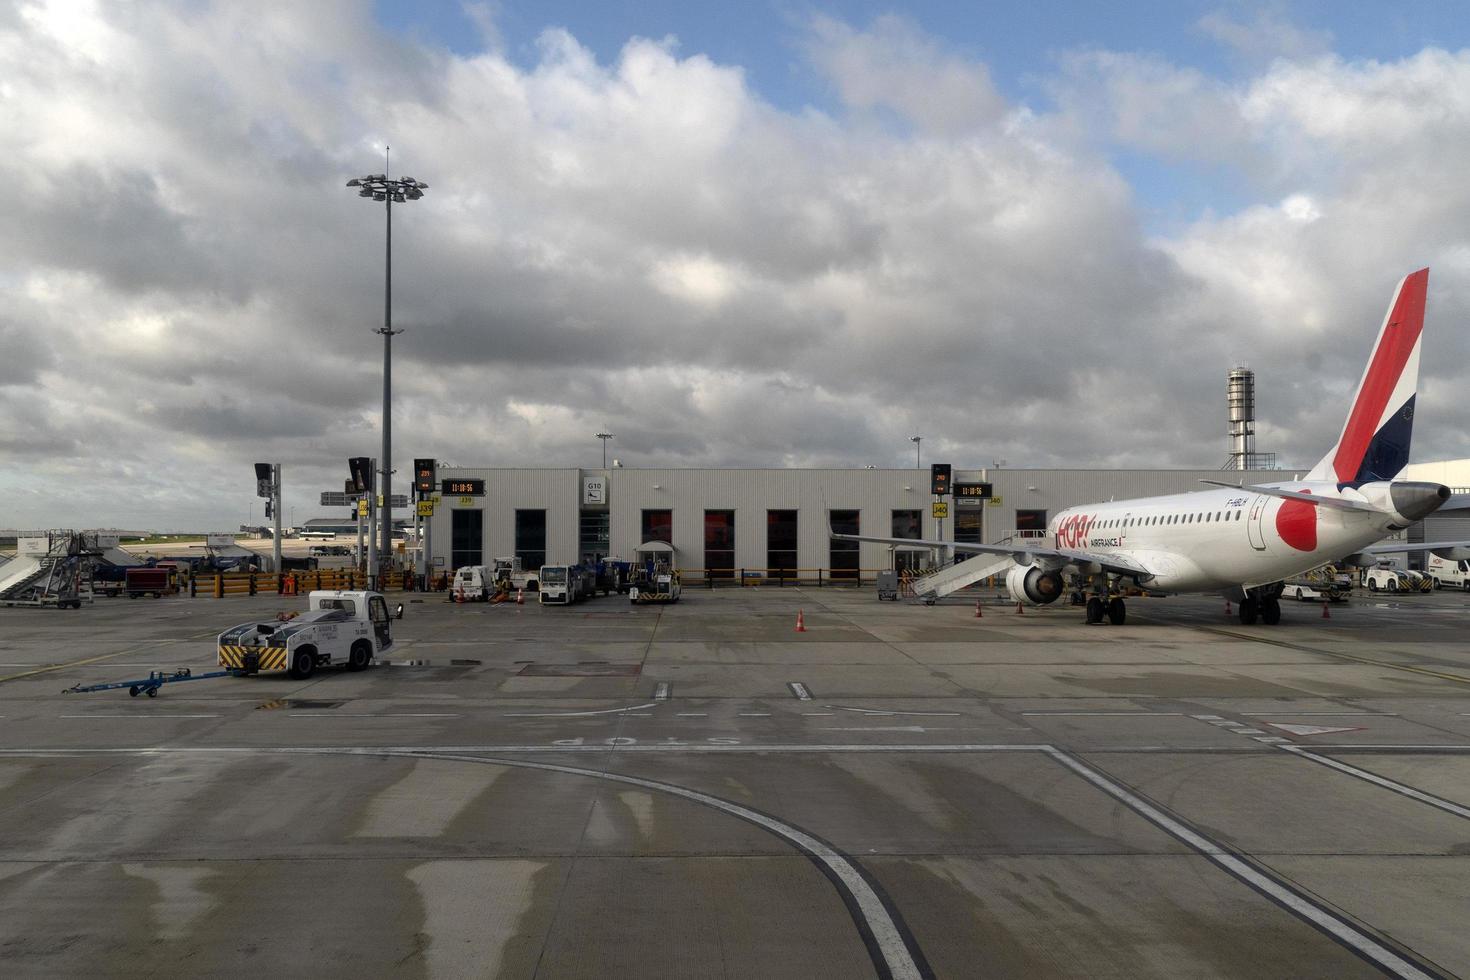 paris, frança - 7 de novembro de 2019 - aeroporto de paris cdg pouso e carregamento de carga e passageiros foto